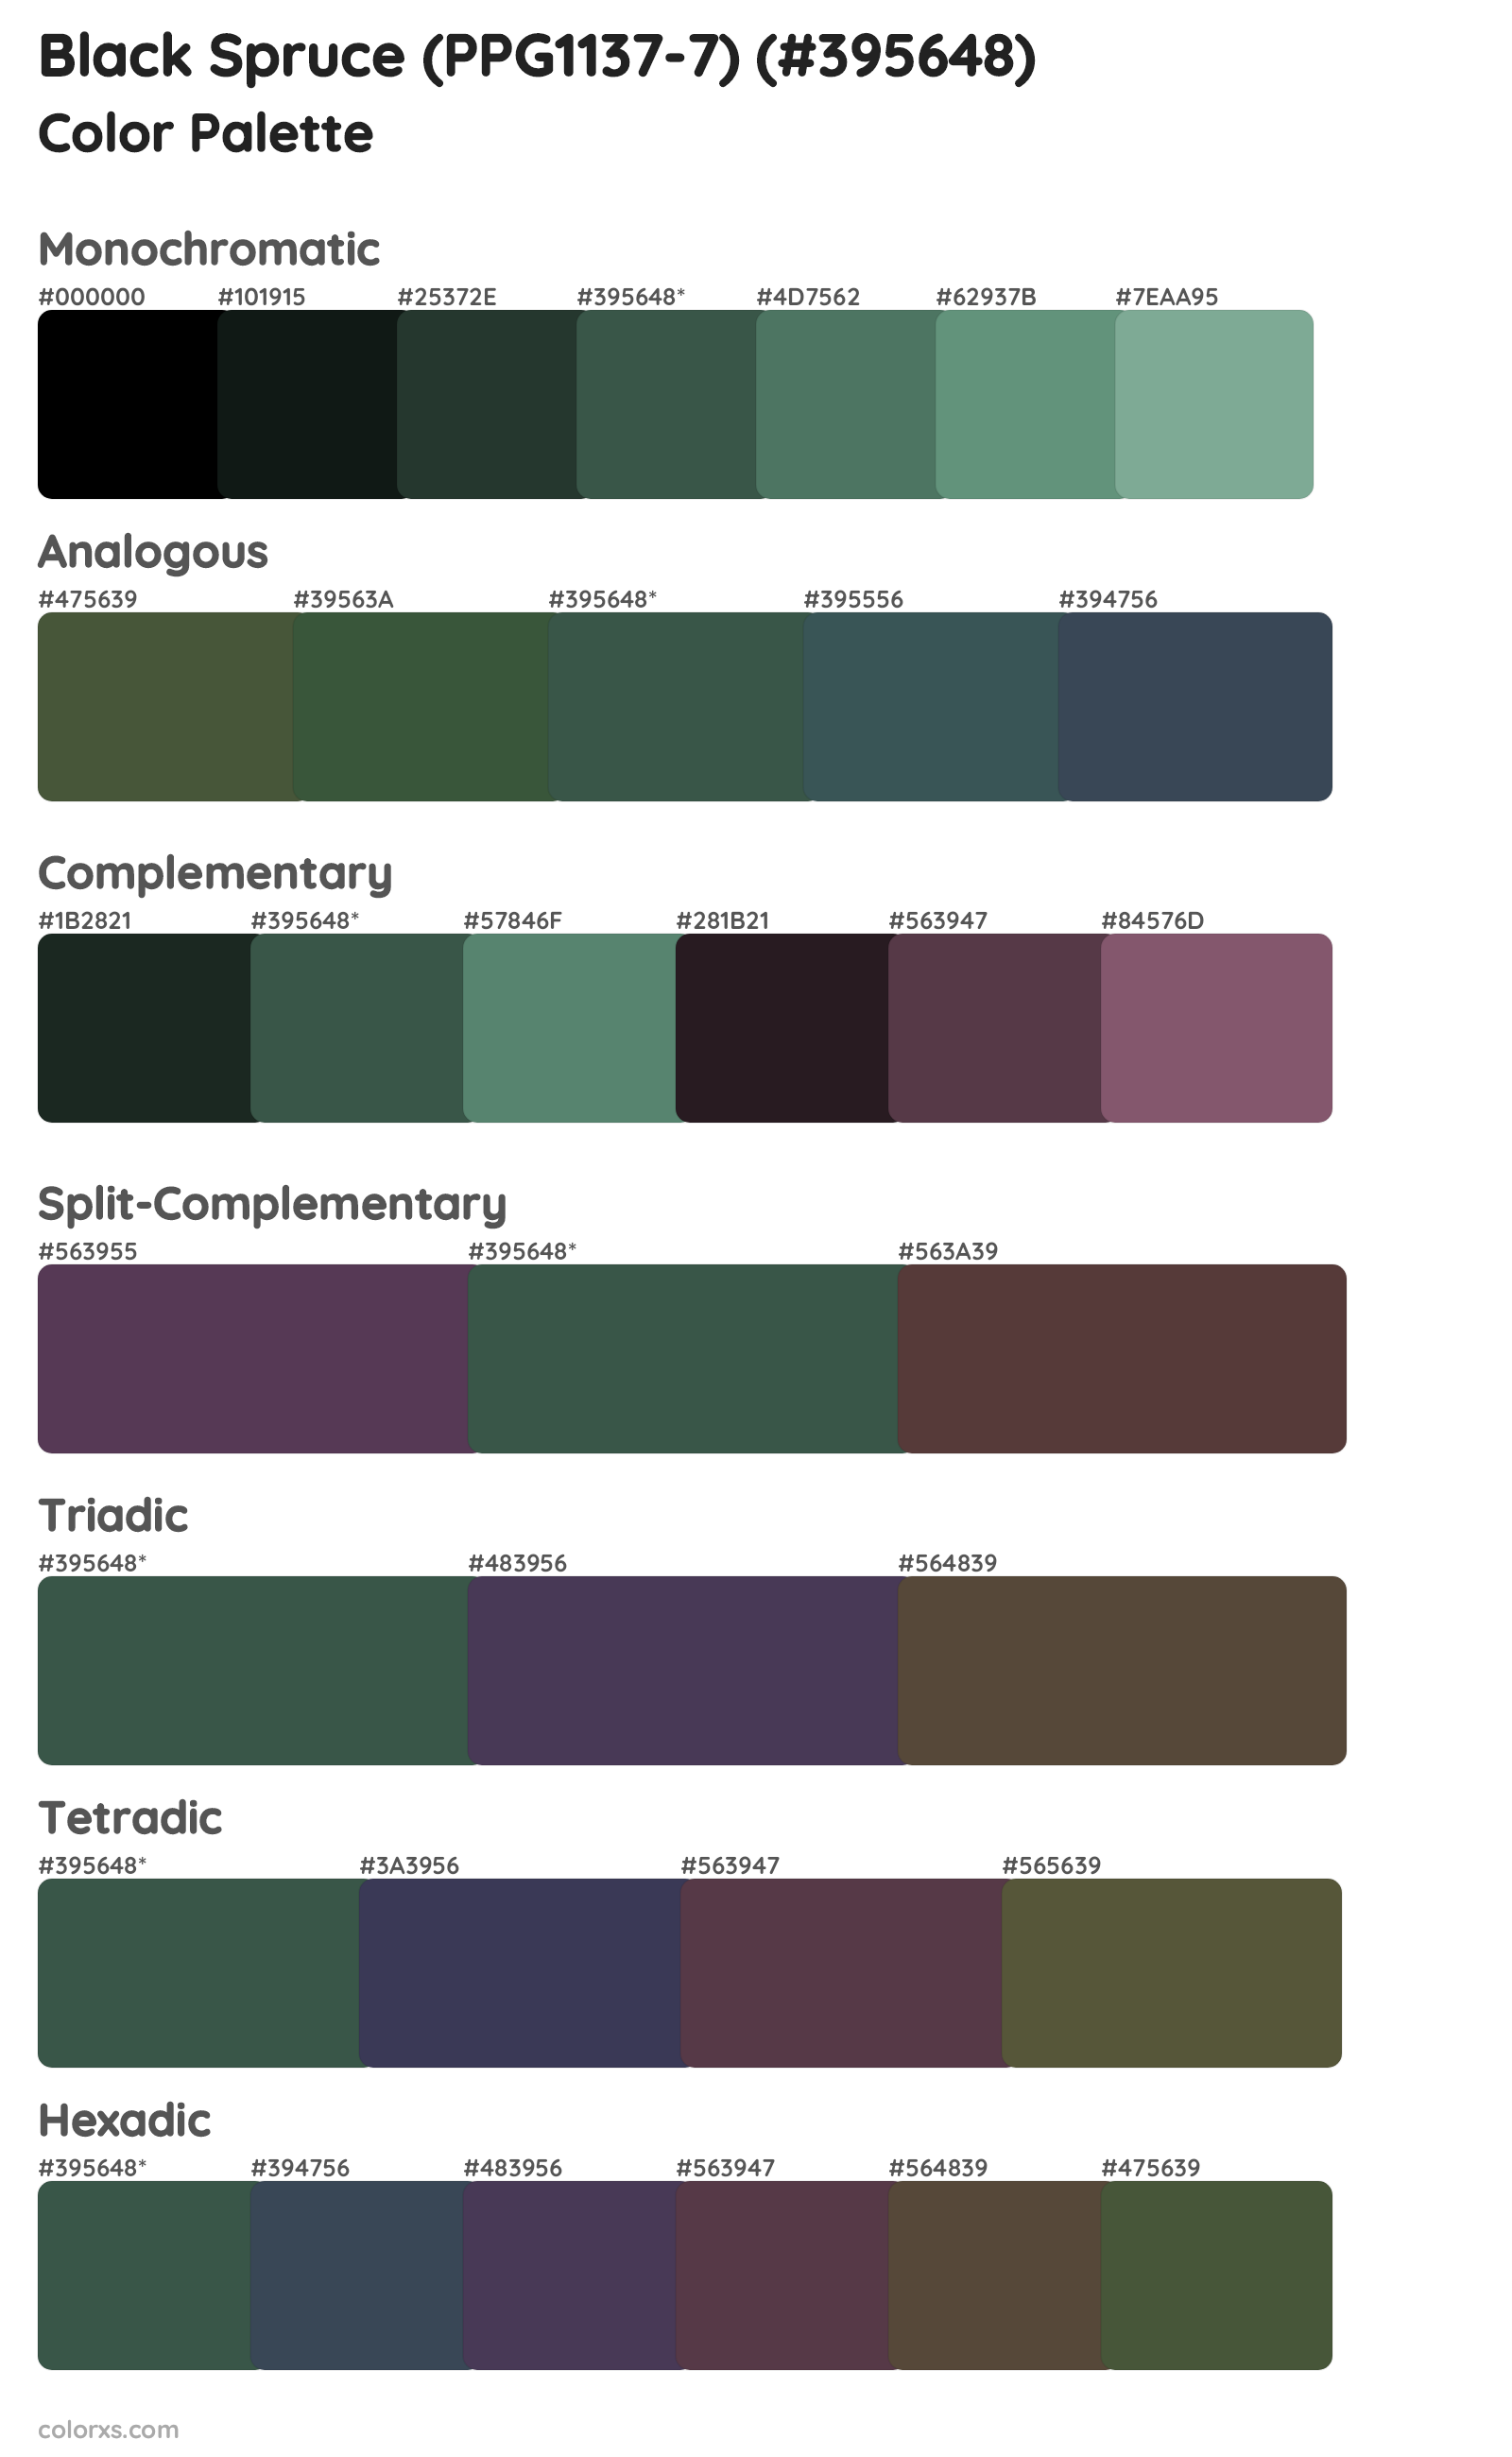 Black Spruce (PPG1137-7) Color Scheme Palettes